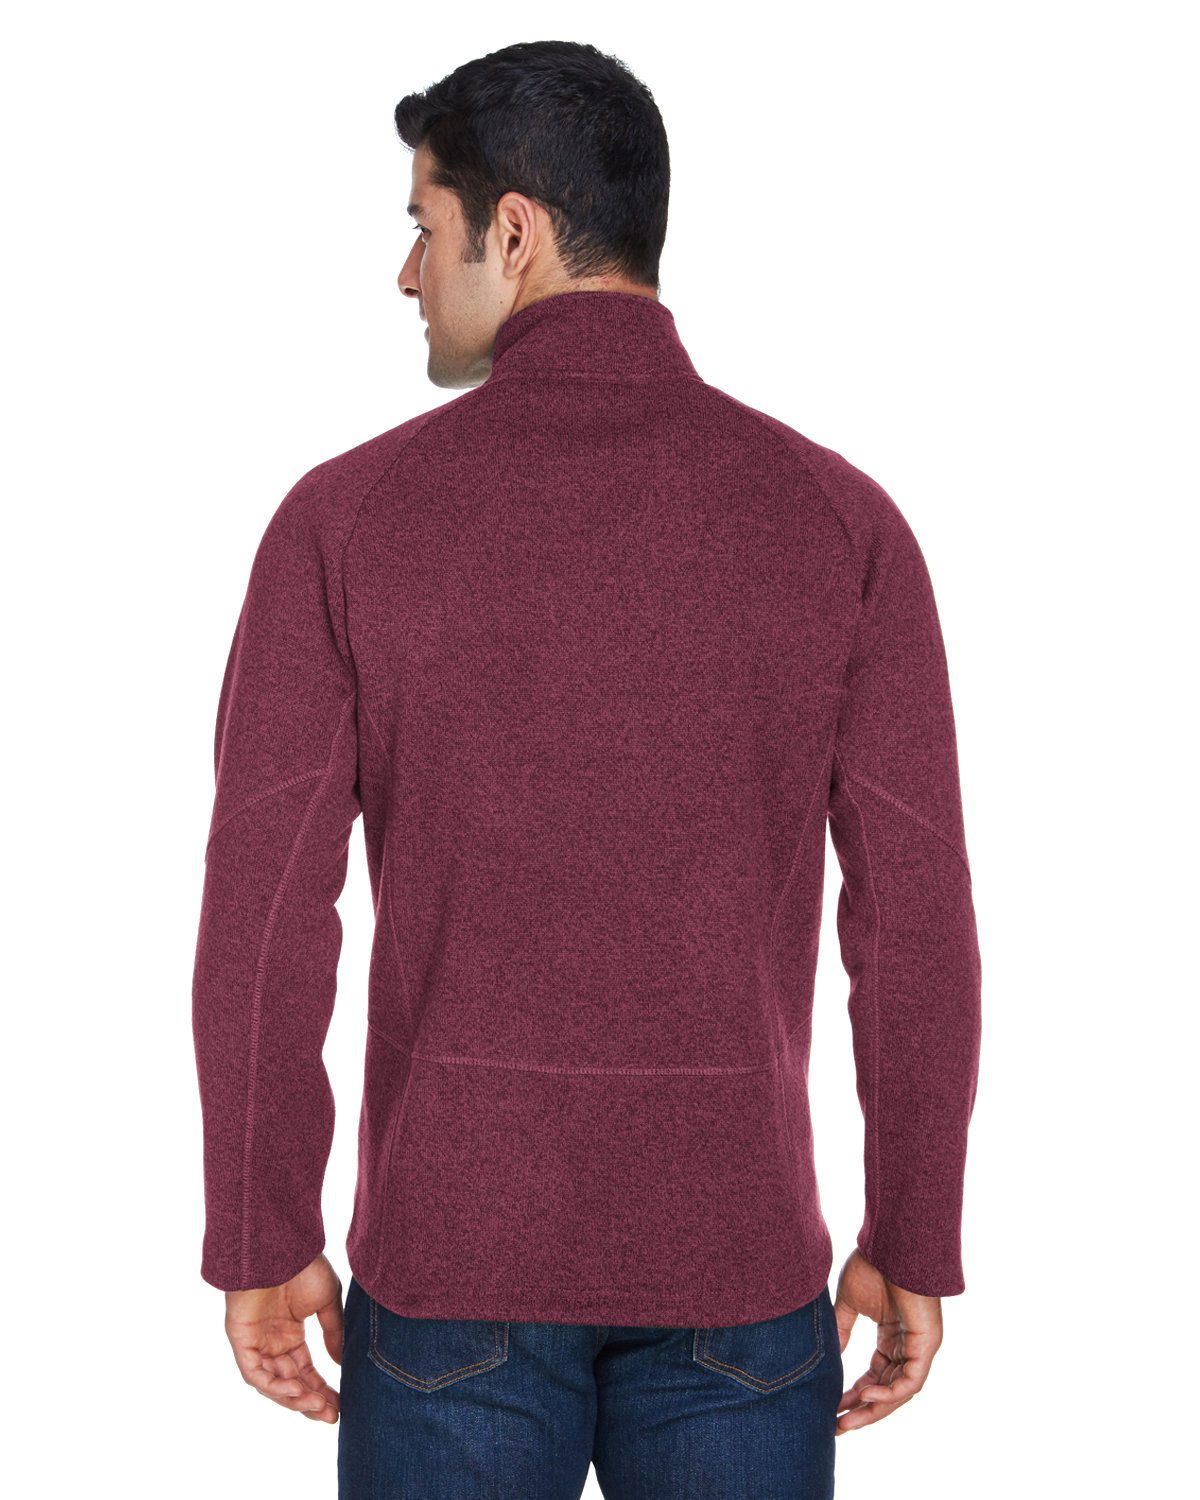 Devon & Jones Adult Bristol Sweater Fleece Quarter-Zip #DG792 Burgundy Heather Back